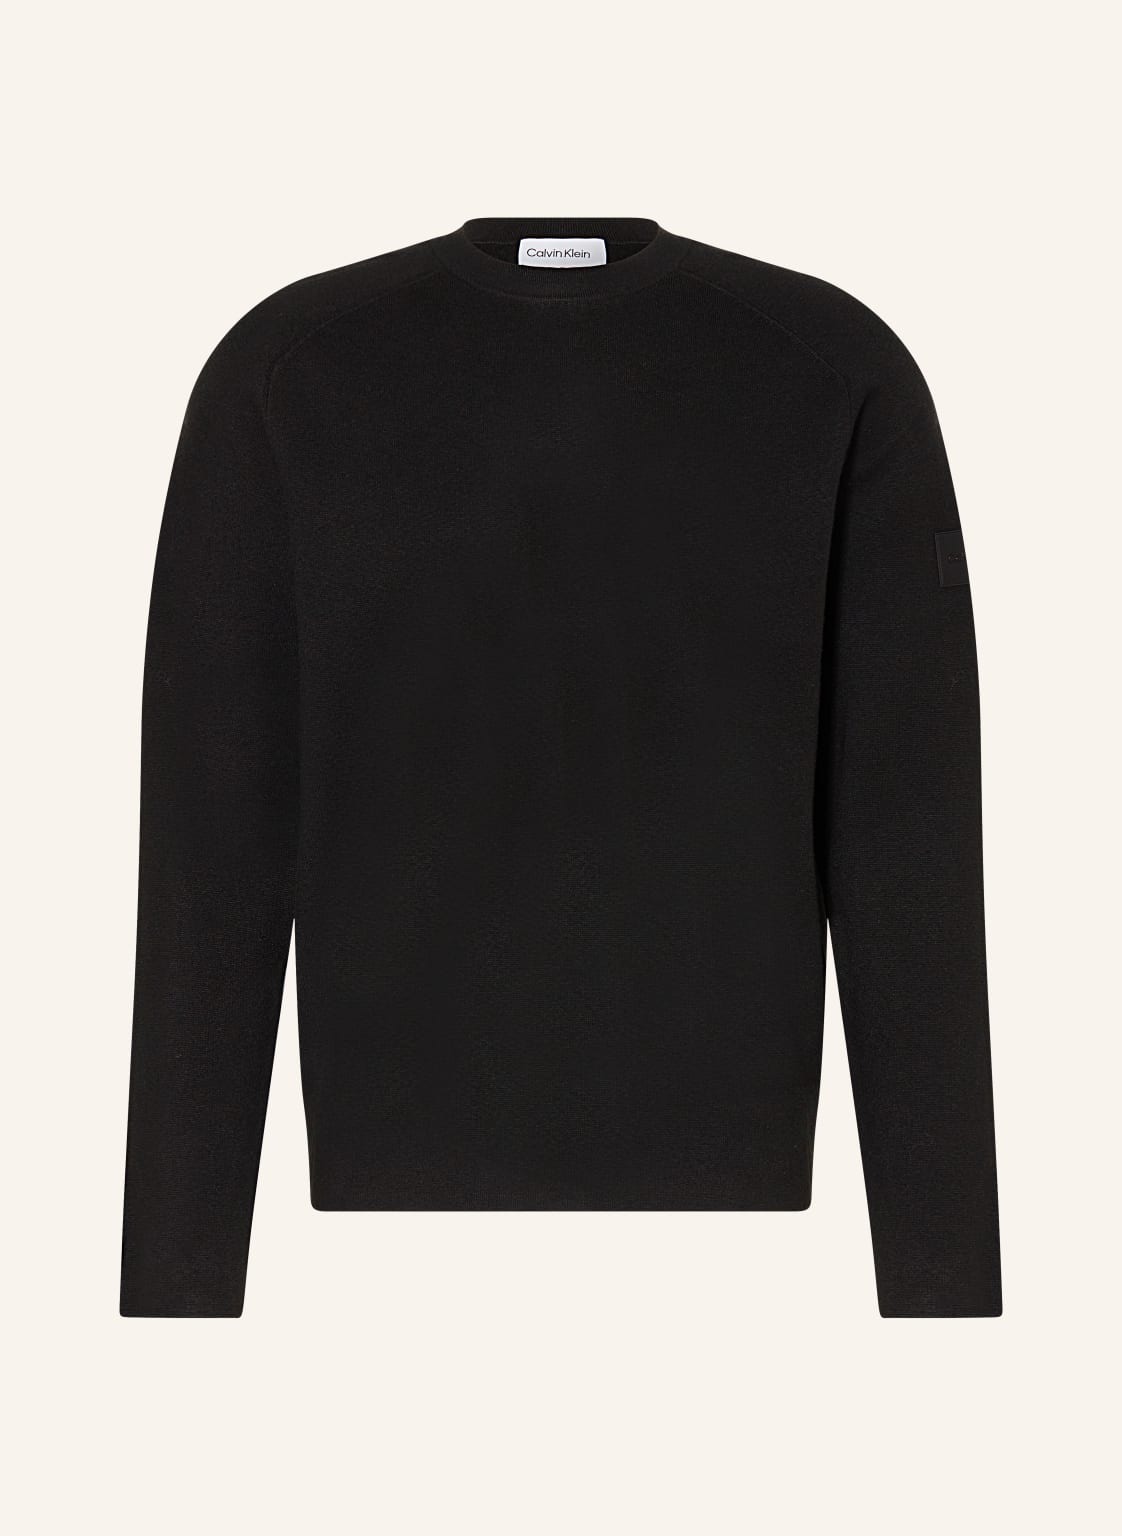 Calvin Klein Sweatshirt schwarz von Calvin Klein